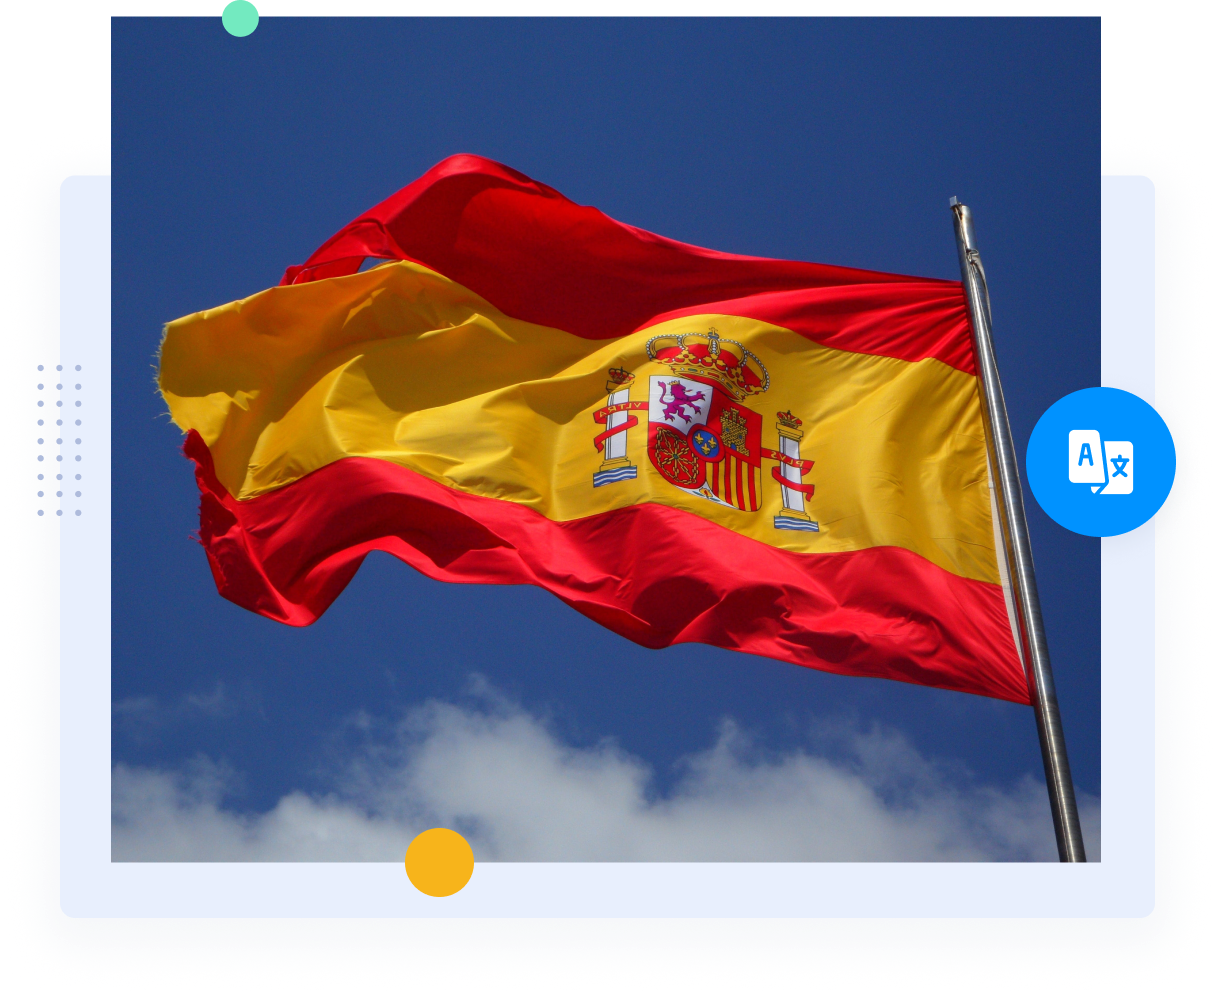 La bandera roja y amarilla de España representa a los traductores profesionales de español y los servicios de traducción.